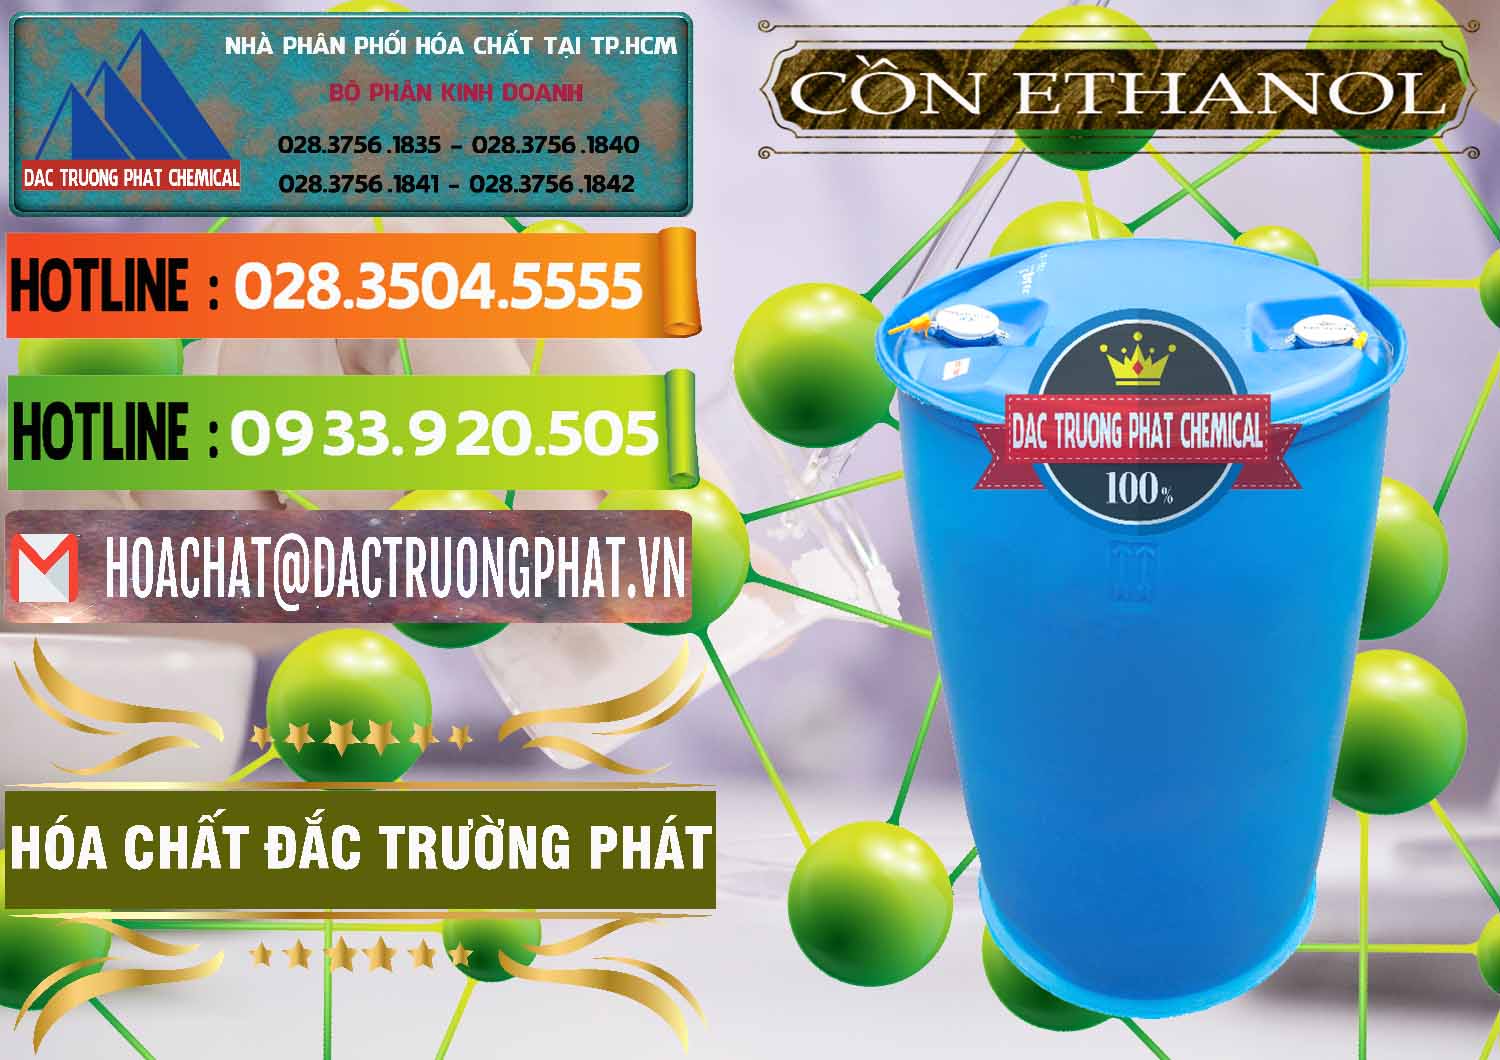 Nơi cung ứng _ bán Cồn Ethanol - C2H5OH Thực Phẩm Food Grade Việt Nam - 0330 - Công ty cung cấp - bán hóa chất tại TP.HCM - cungcaphoachat.com.vn